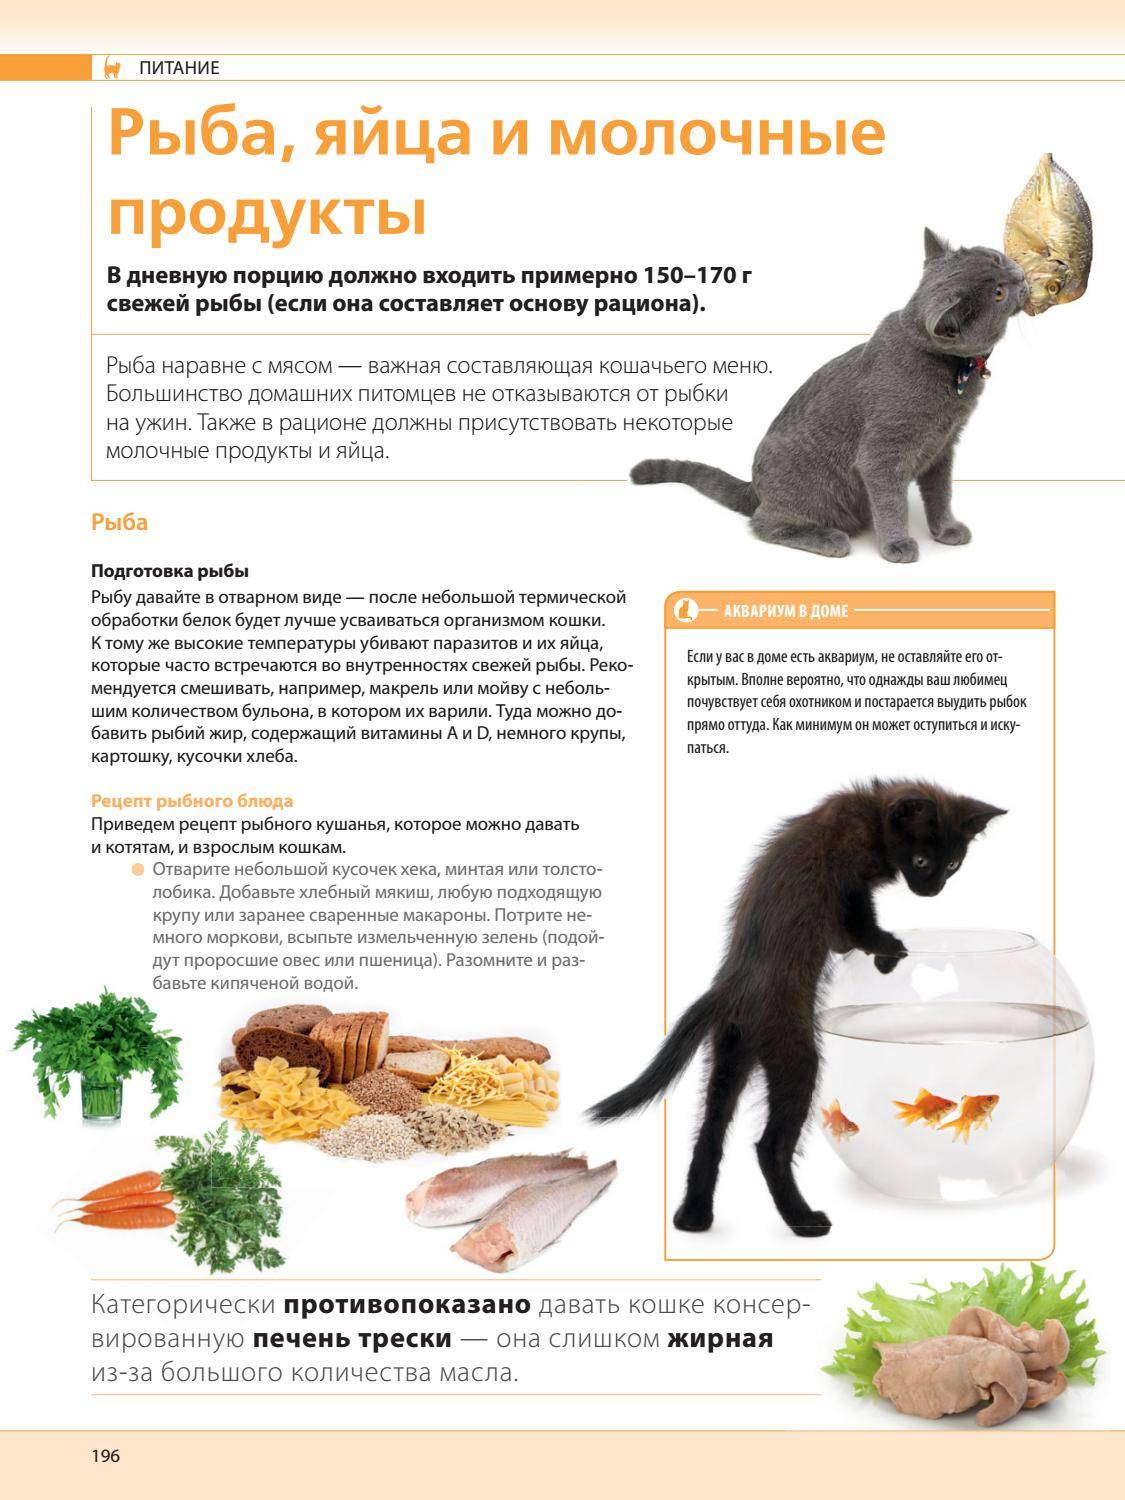 Сырая печень коту. Рацион кошки. Натуральное питание для котят. Рацион еды для кошек. Правильное питание для котов и кошек.